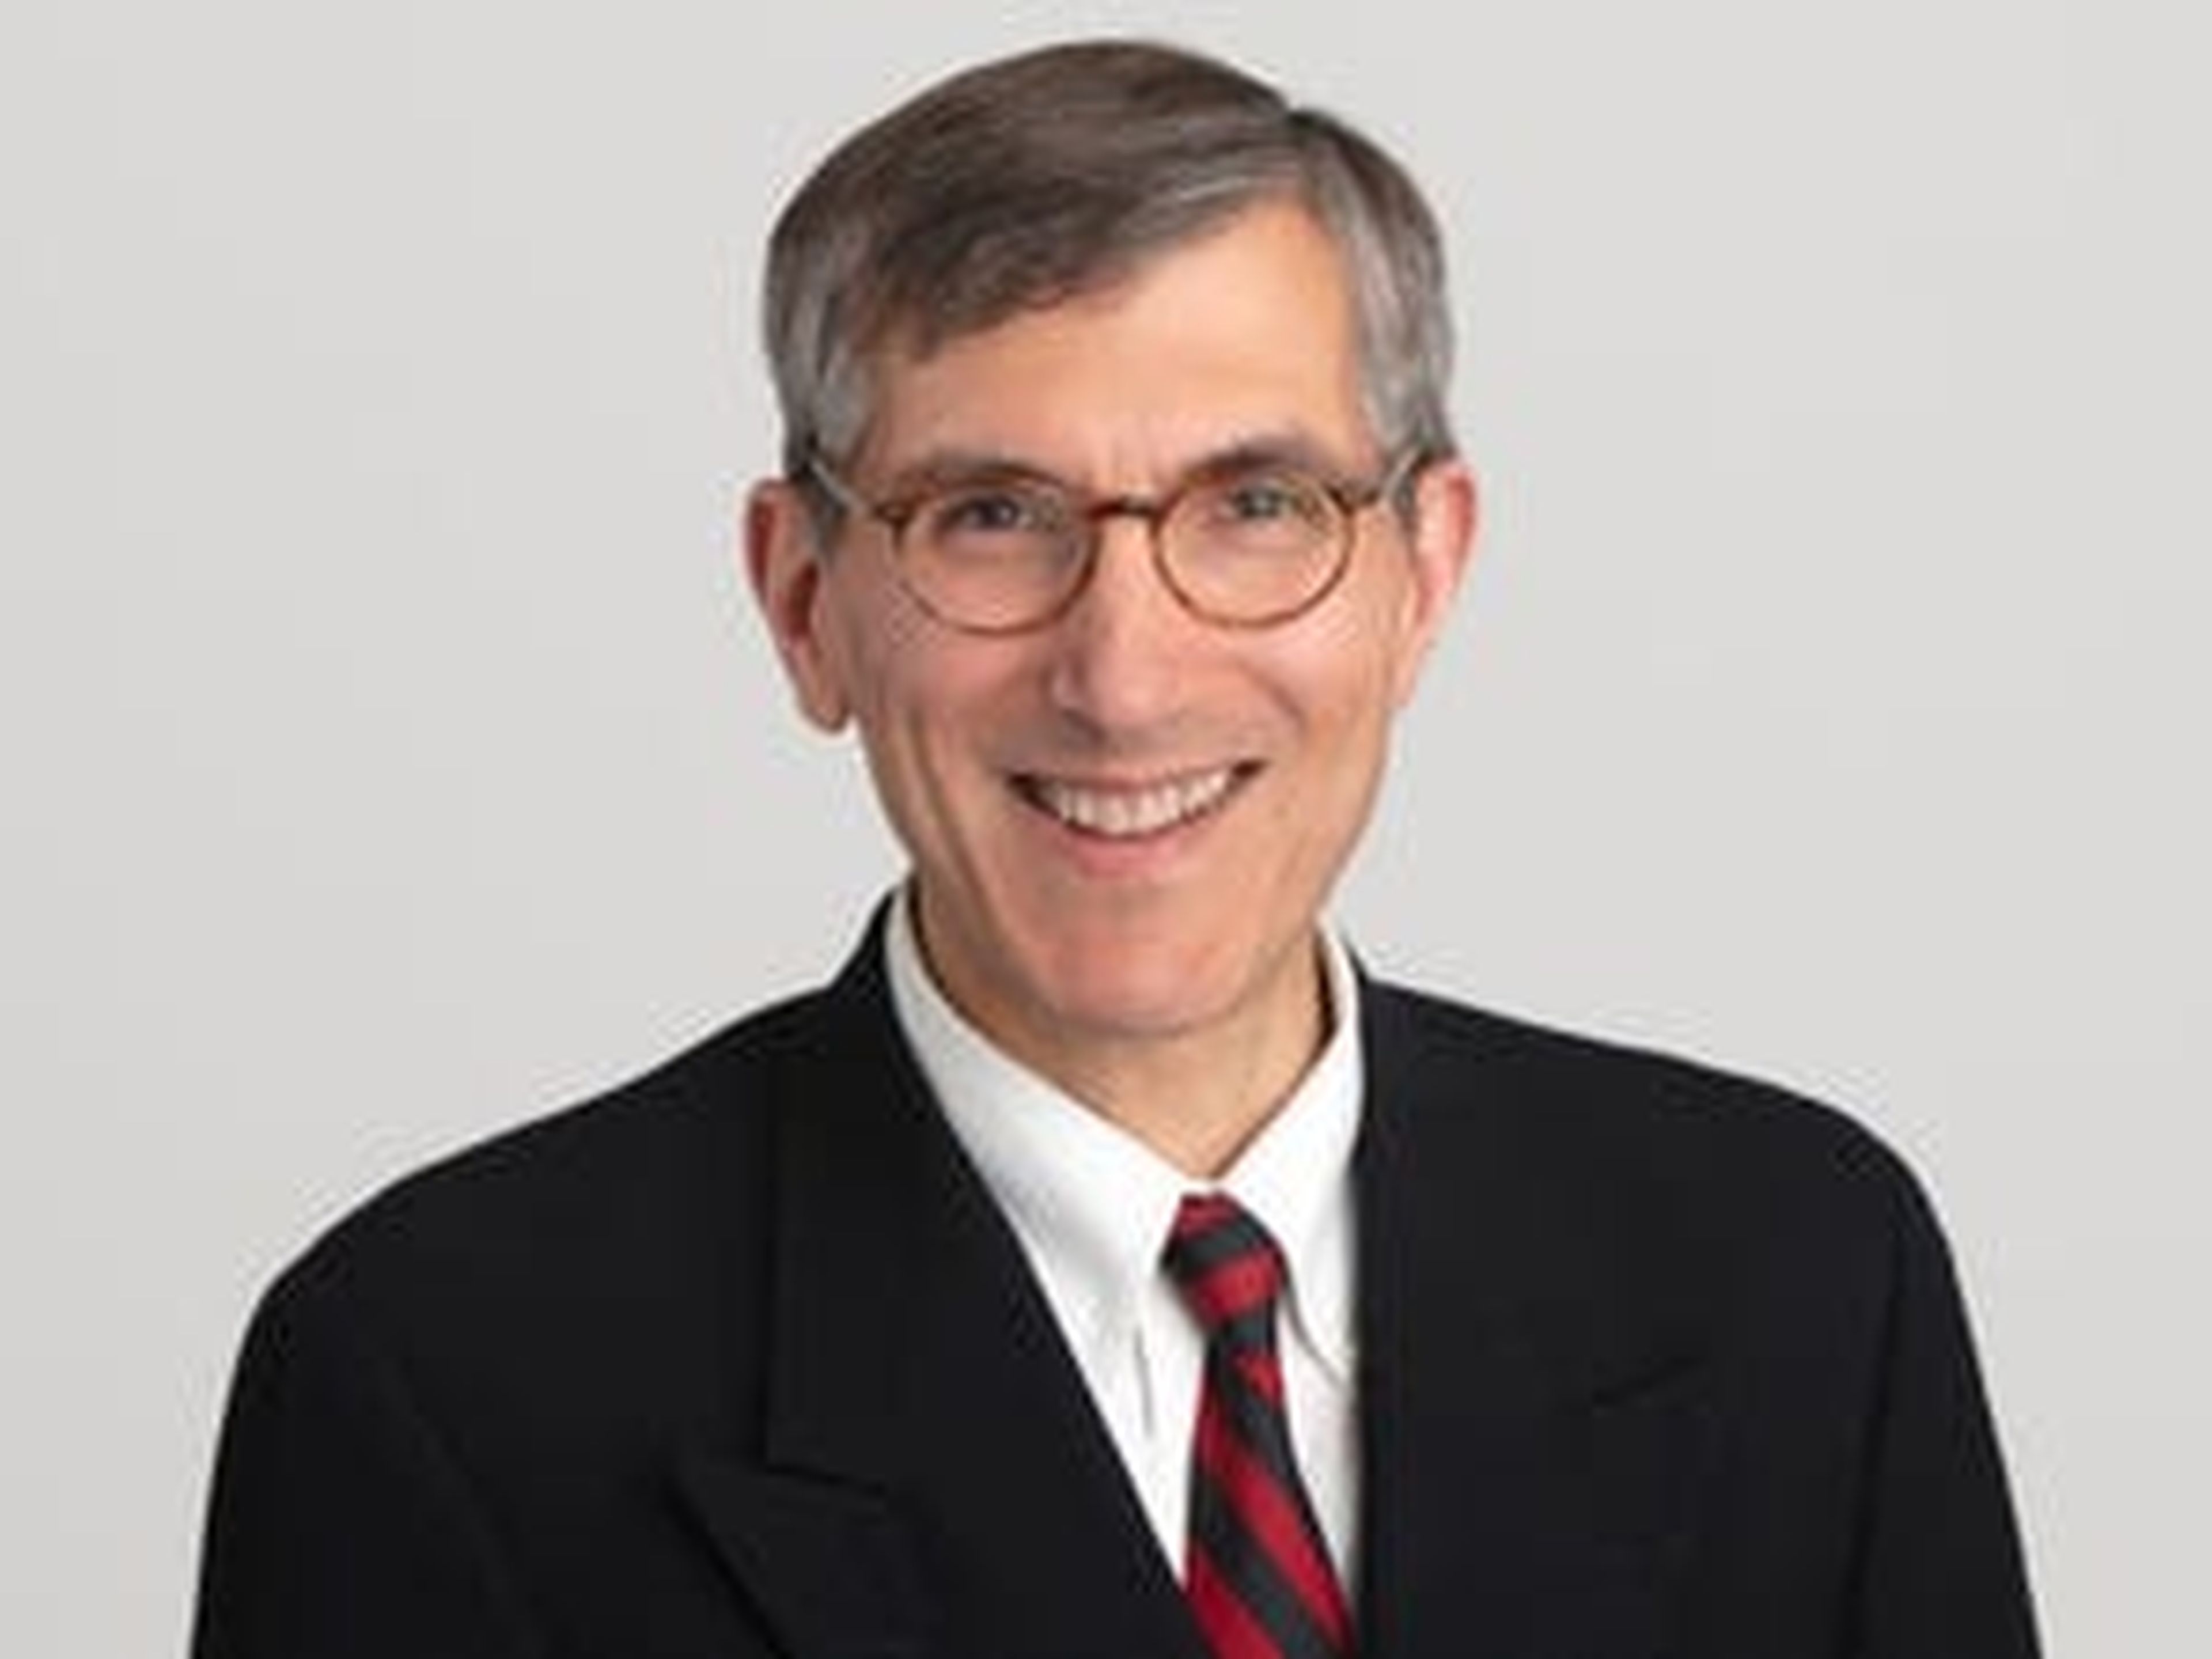 El doctor Peter Marks, director del Centro de Evaluación e Investigación Biológica de la Administración de Medicamentos y Alimentos (FDA) estadounidense.